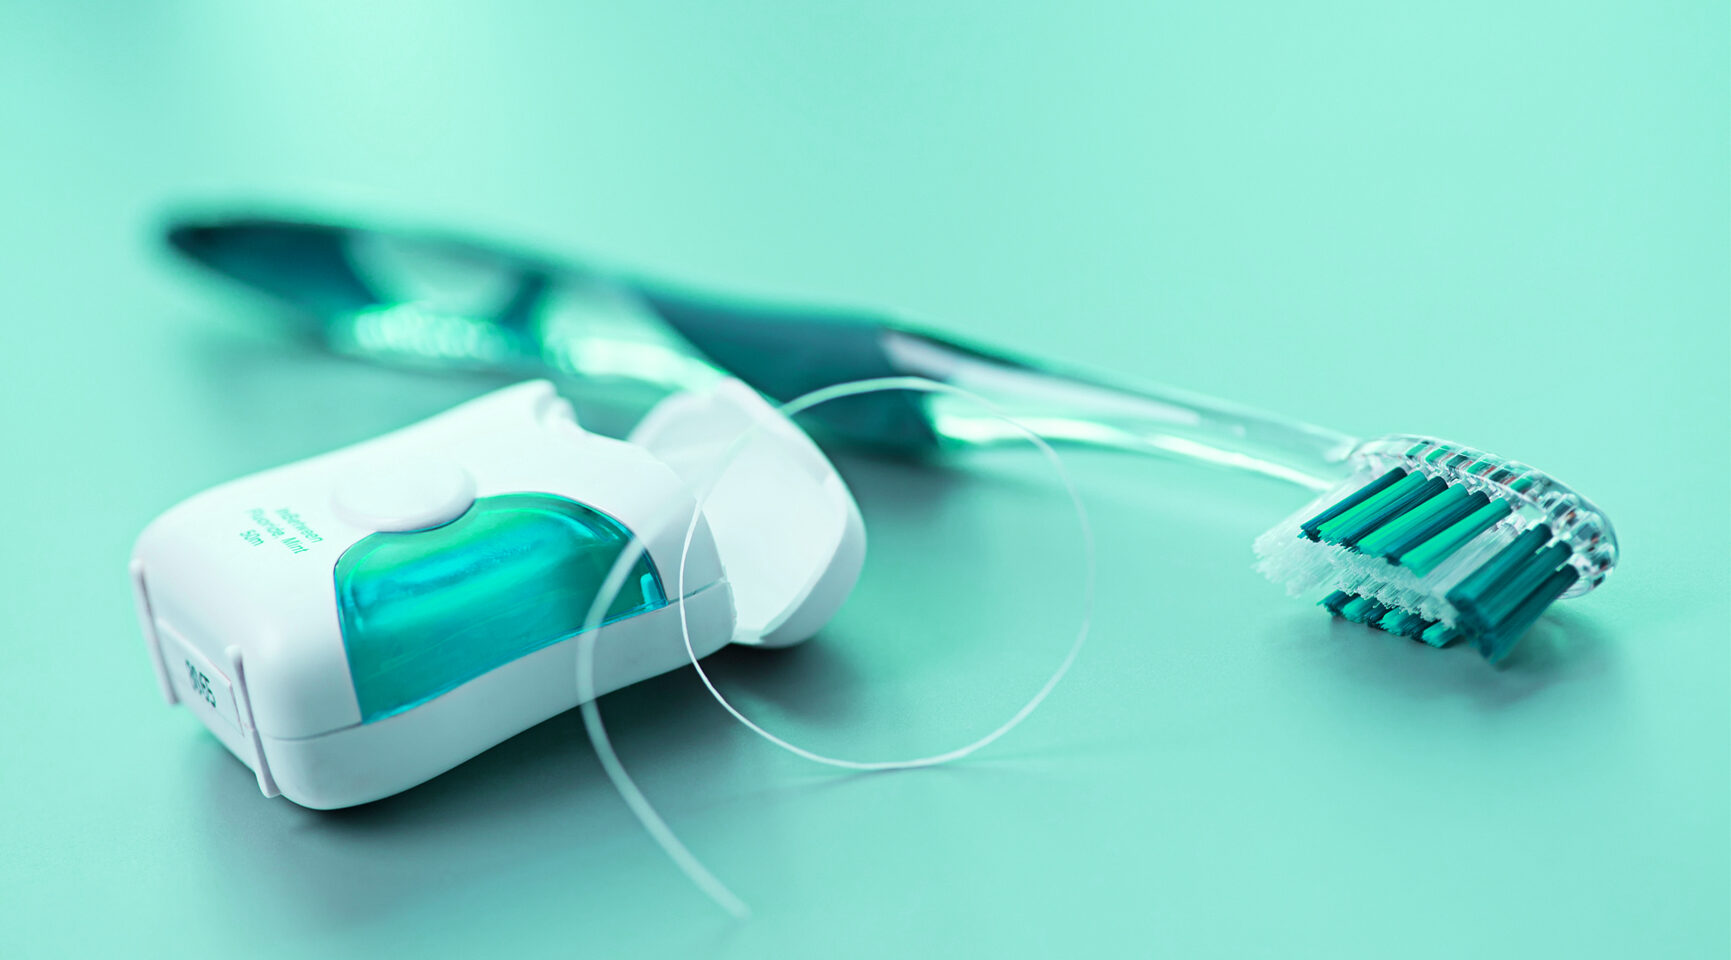 Produkte für Mundhygiene und OralCare: Produktentwicklung und Produktidee für Private Label Produkte - medizinische und kosmetische Health-Care Produkte